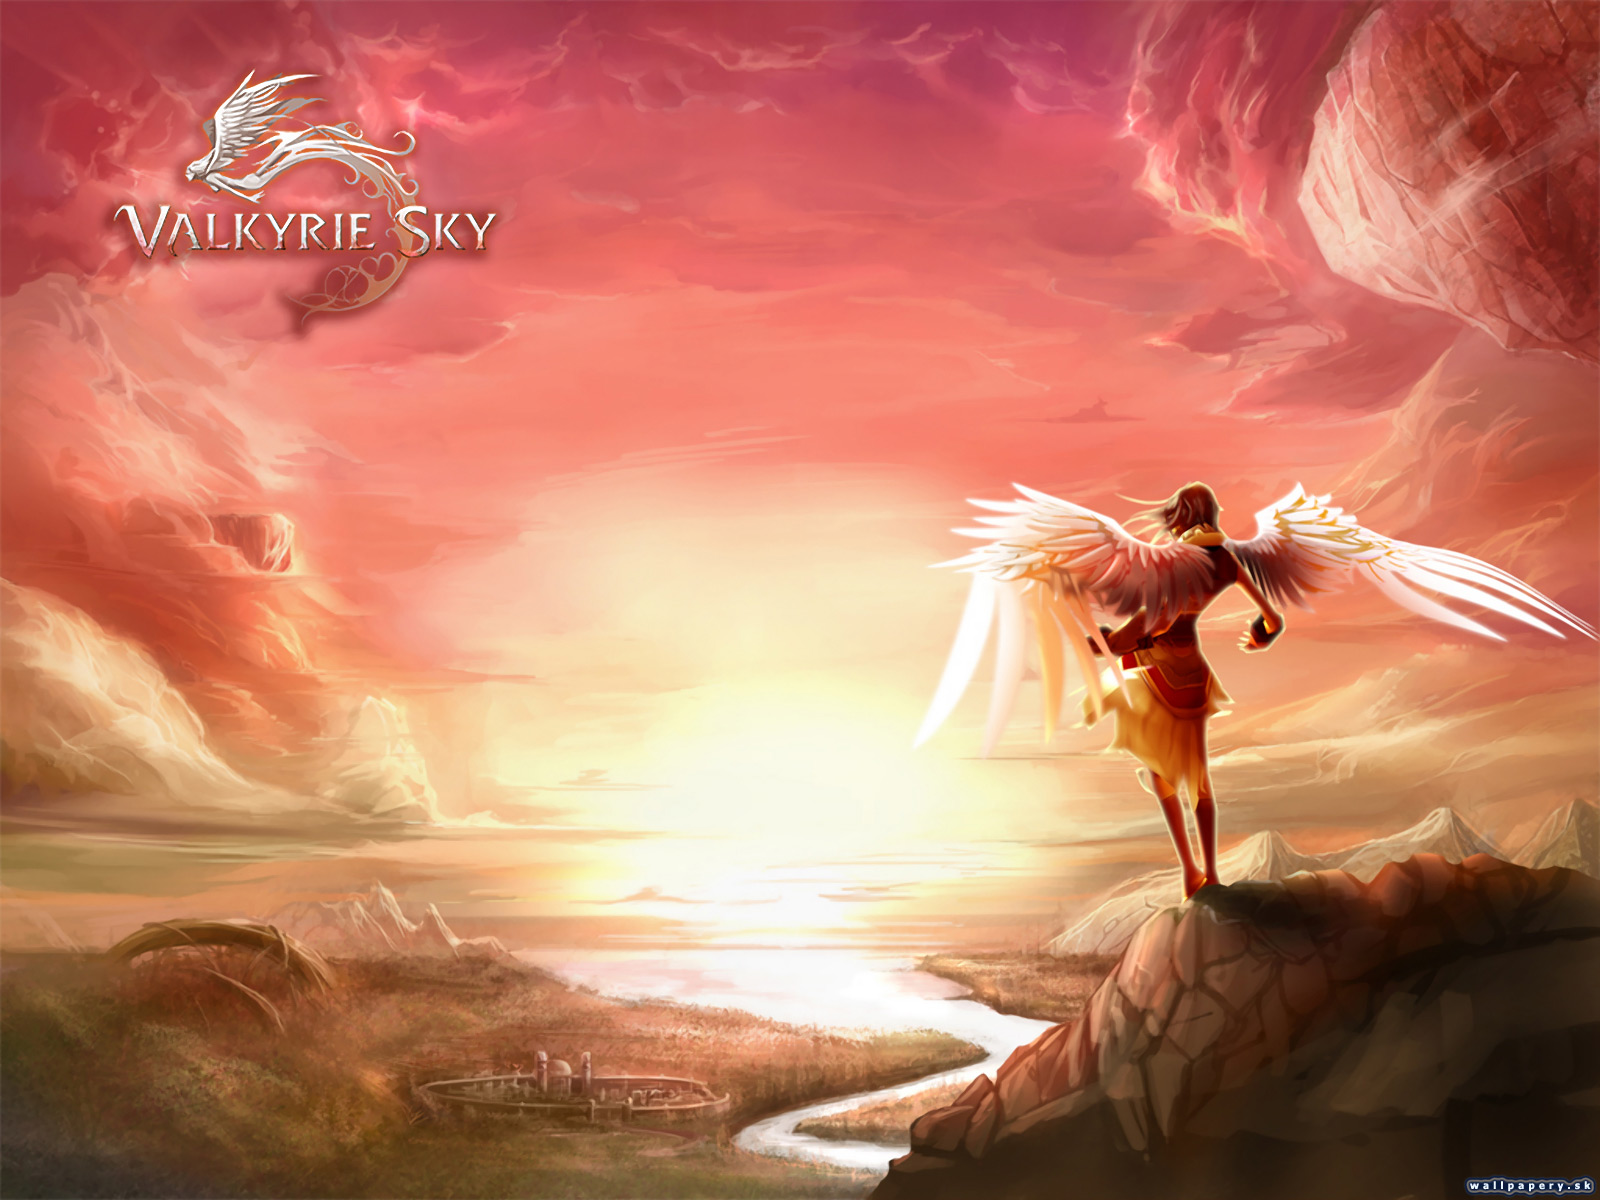 Valkyrie Sky - wallpaper 12